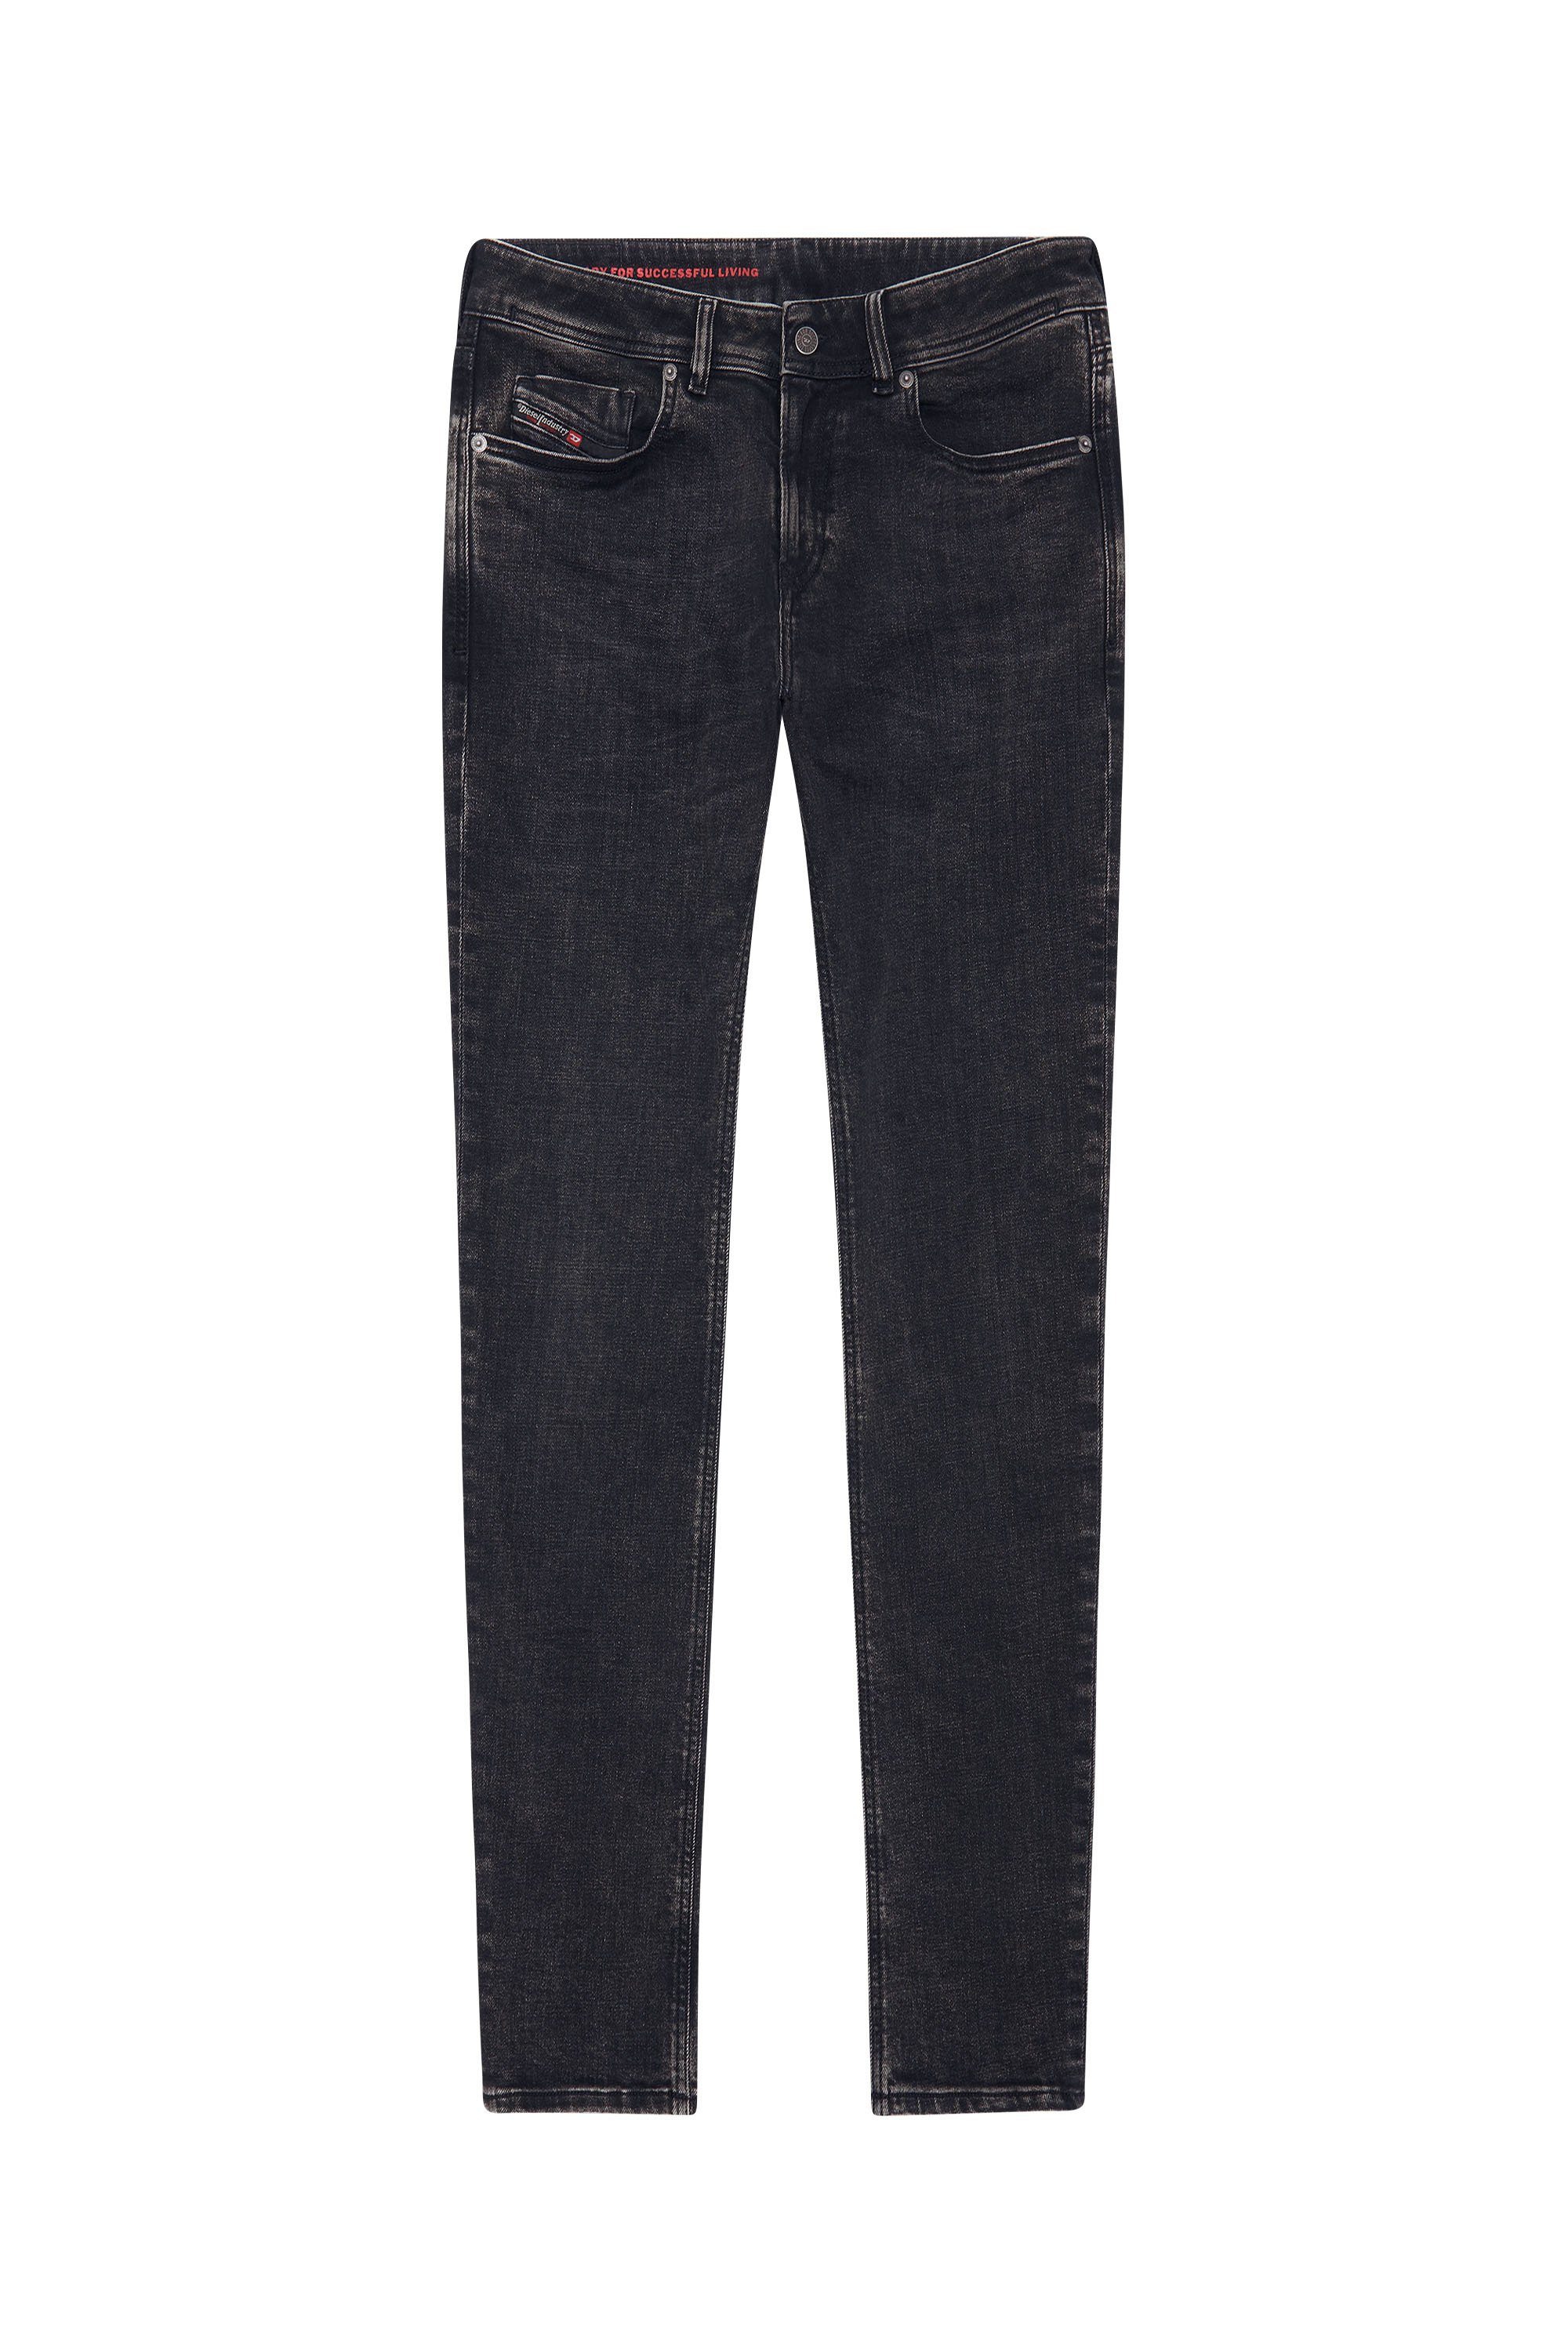 Diesel - Skinny Jeans 1979 Sleenker 09C23, Black/Dark Grey - Image 3